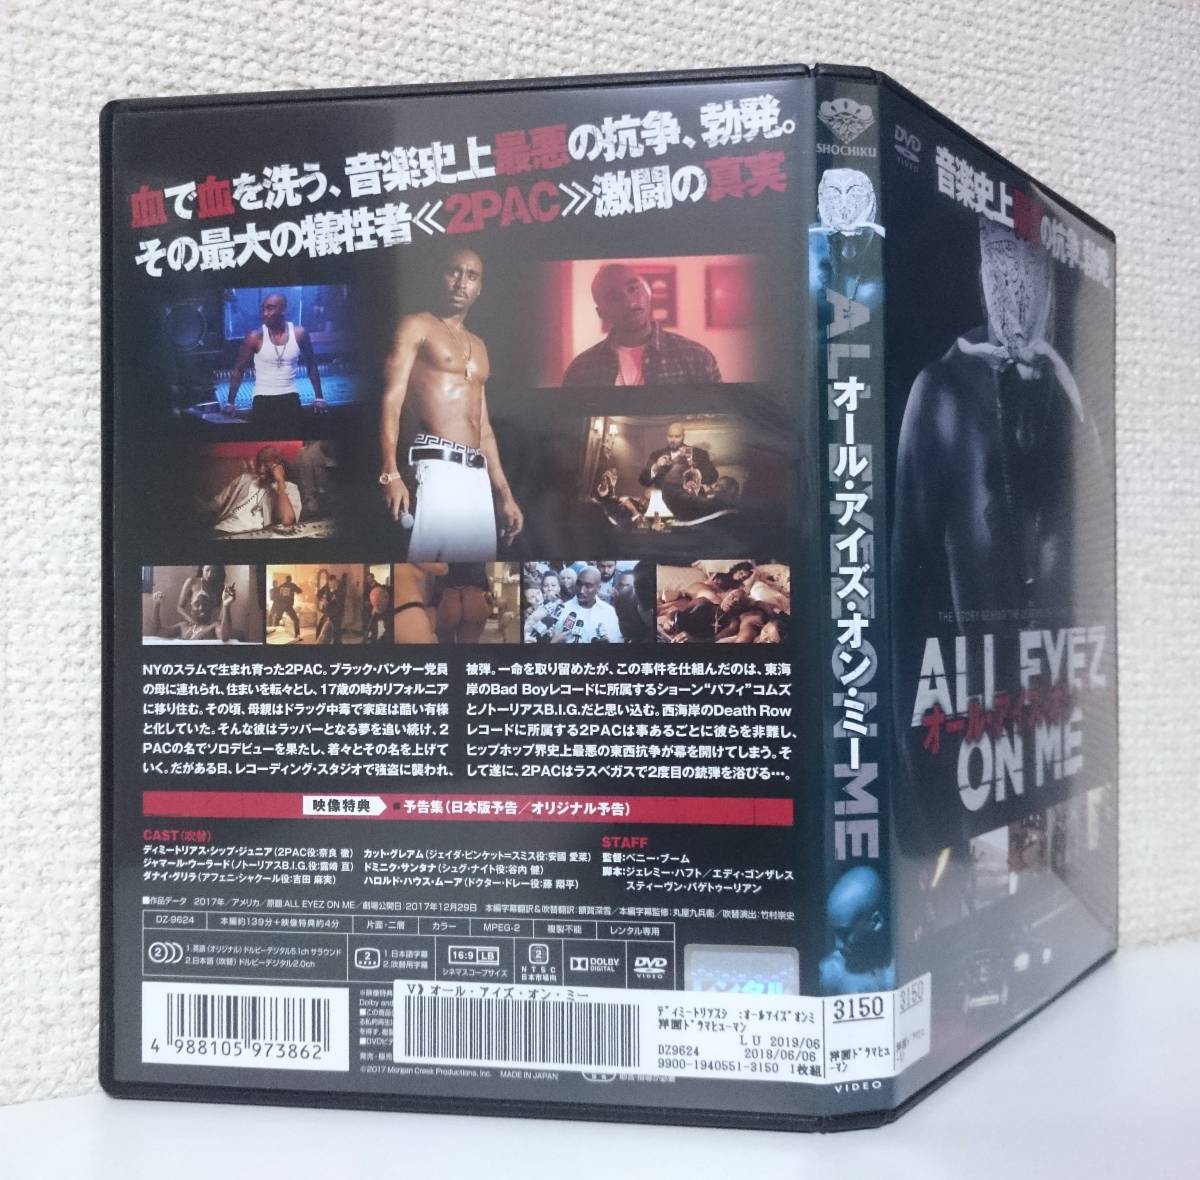 2PAC 伝記映画 「 オール・アイズ・オン・ミー 」 国内版DVD レンタル使用品 PG-12 日本語吹替付き 特典映像　2017年　ブラックムービー_背面に日焼退色。下部にバーコード。